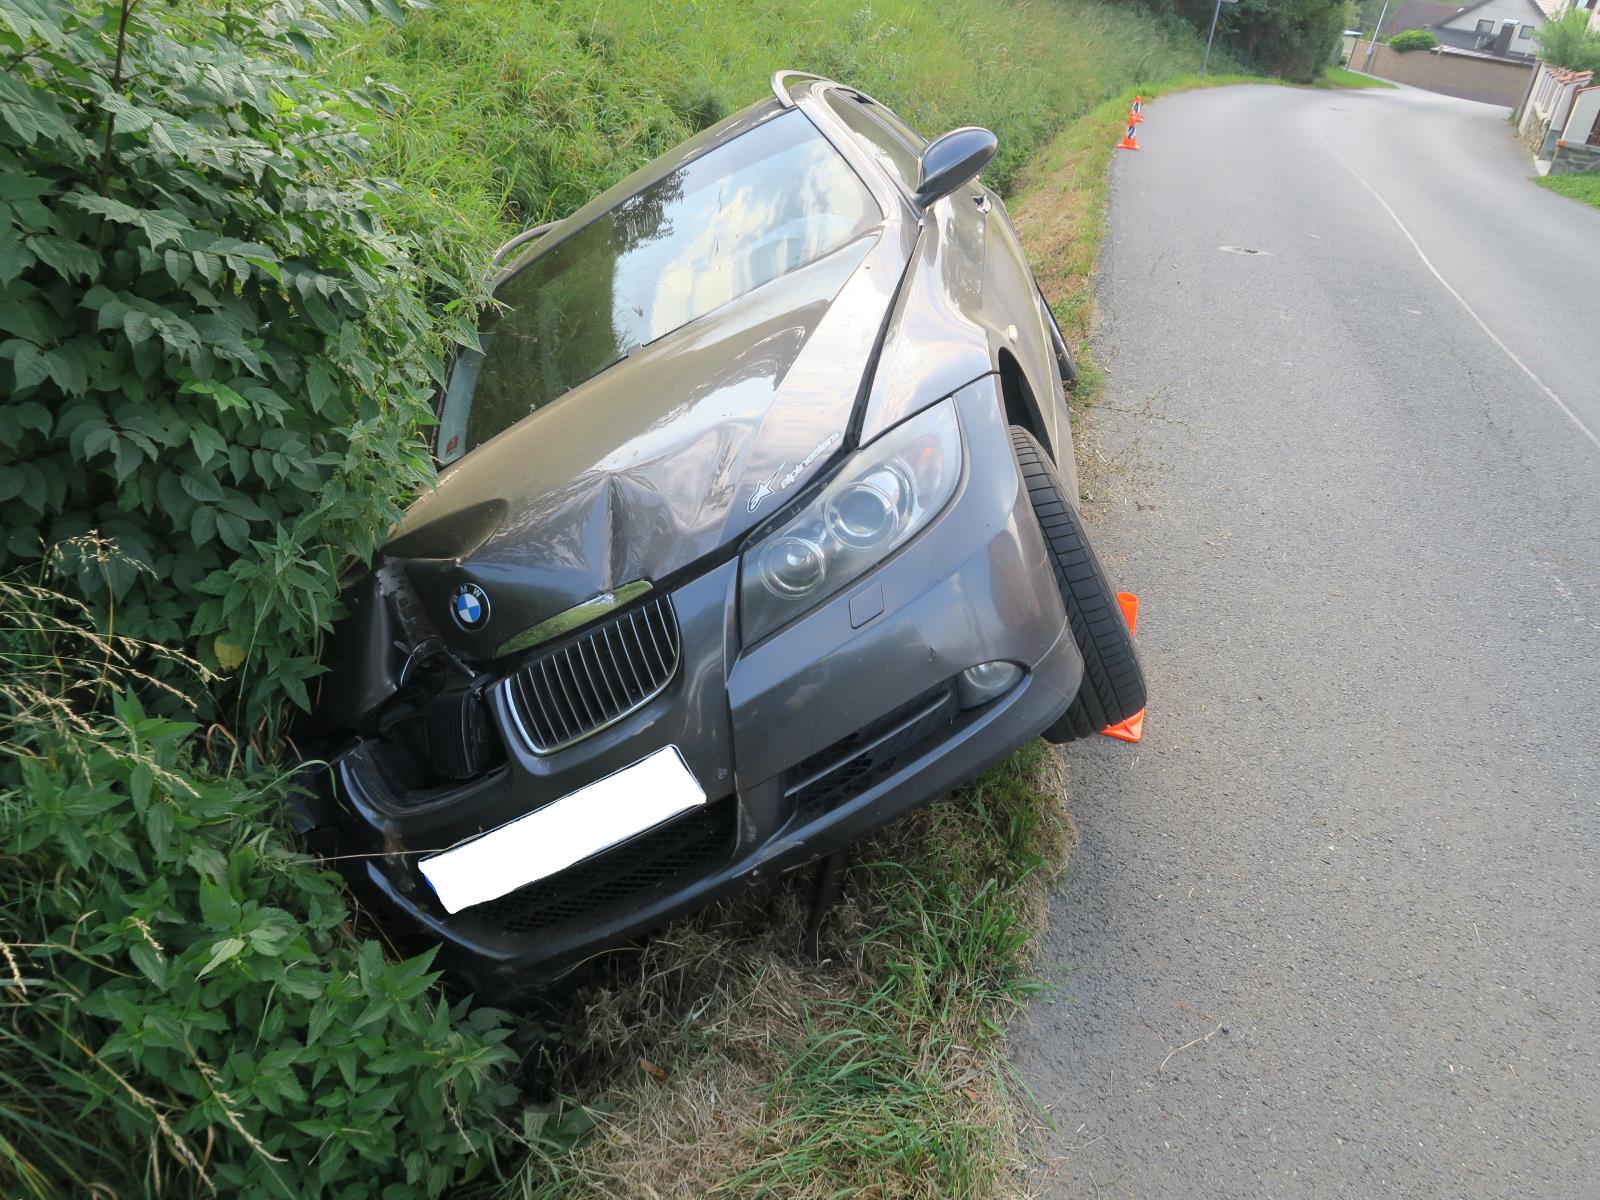 Dopravní nehoda - Bořice - 16.09.2020